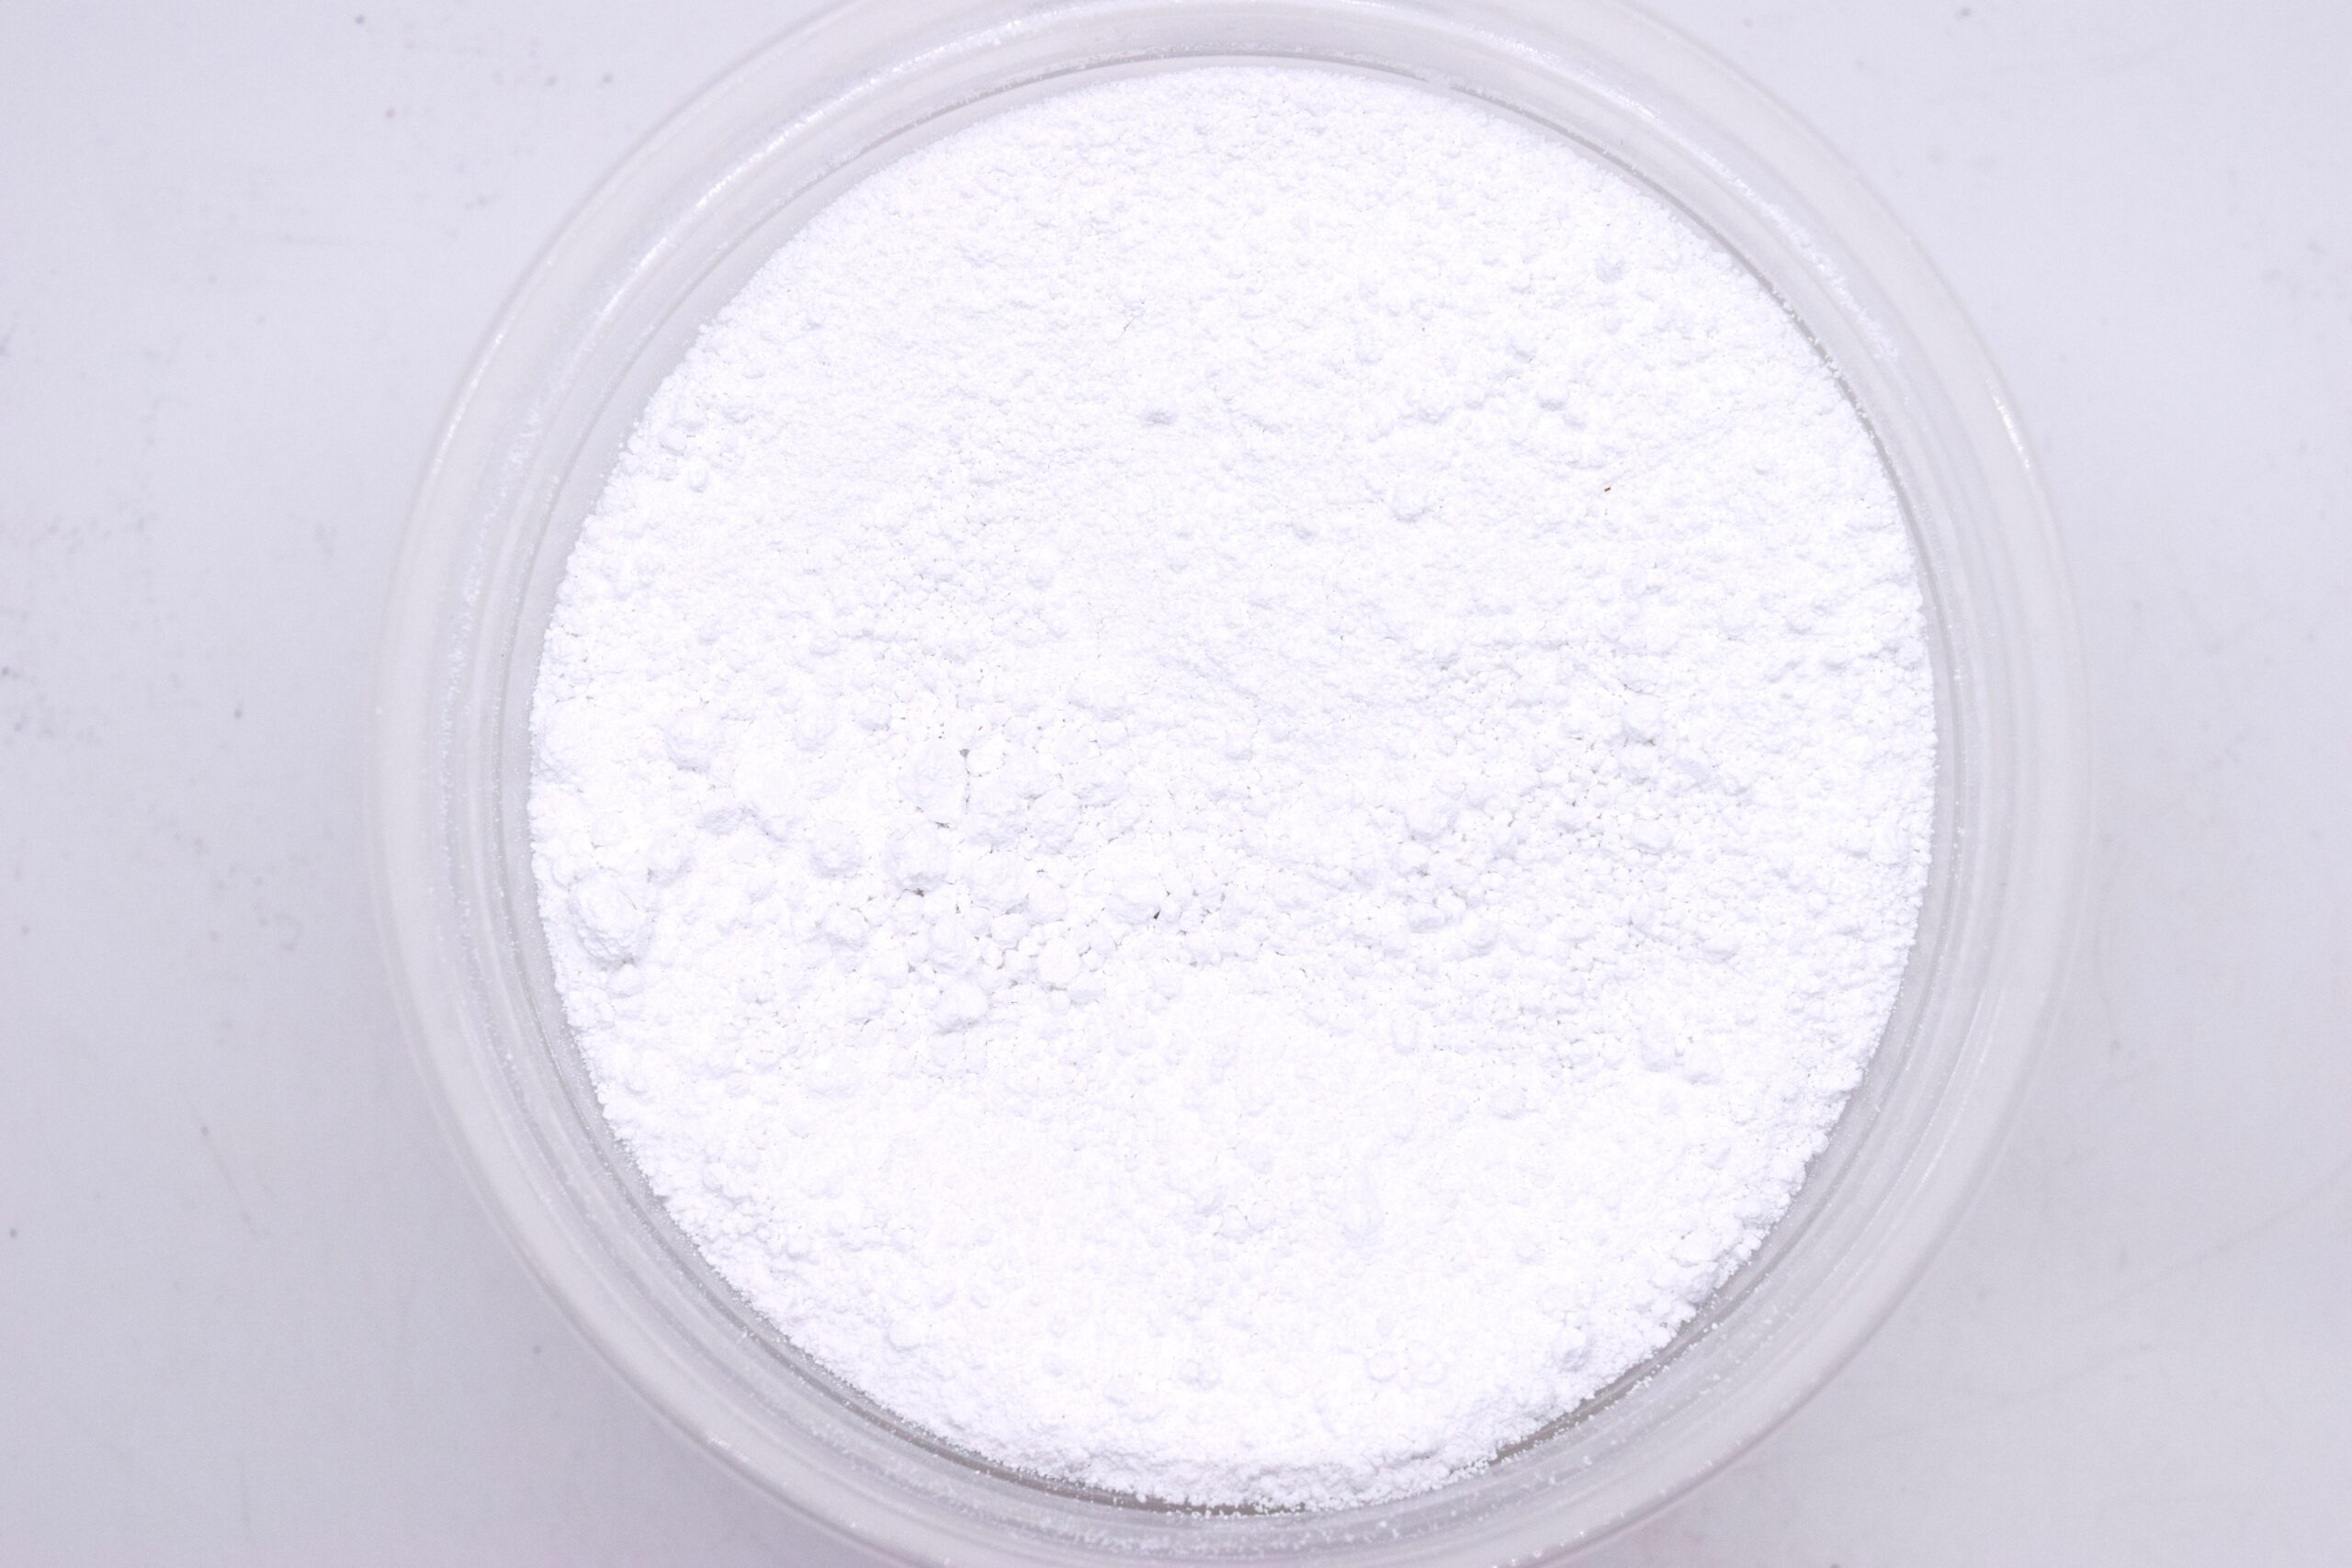 Aluminum Oxide Polish - 1 LB